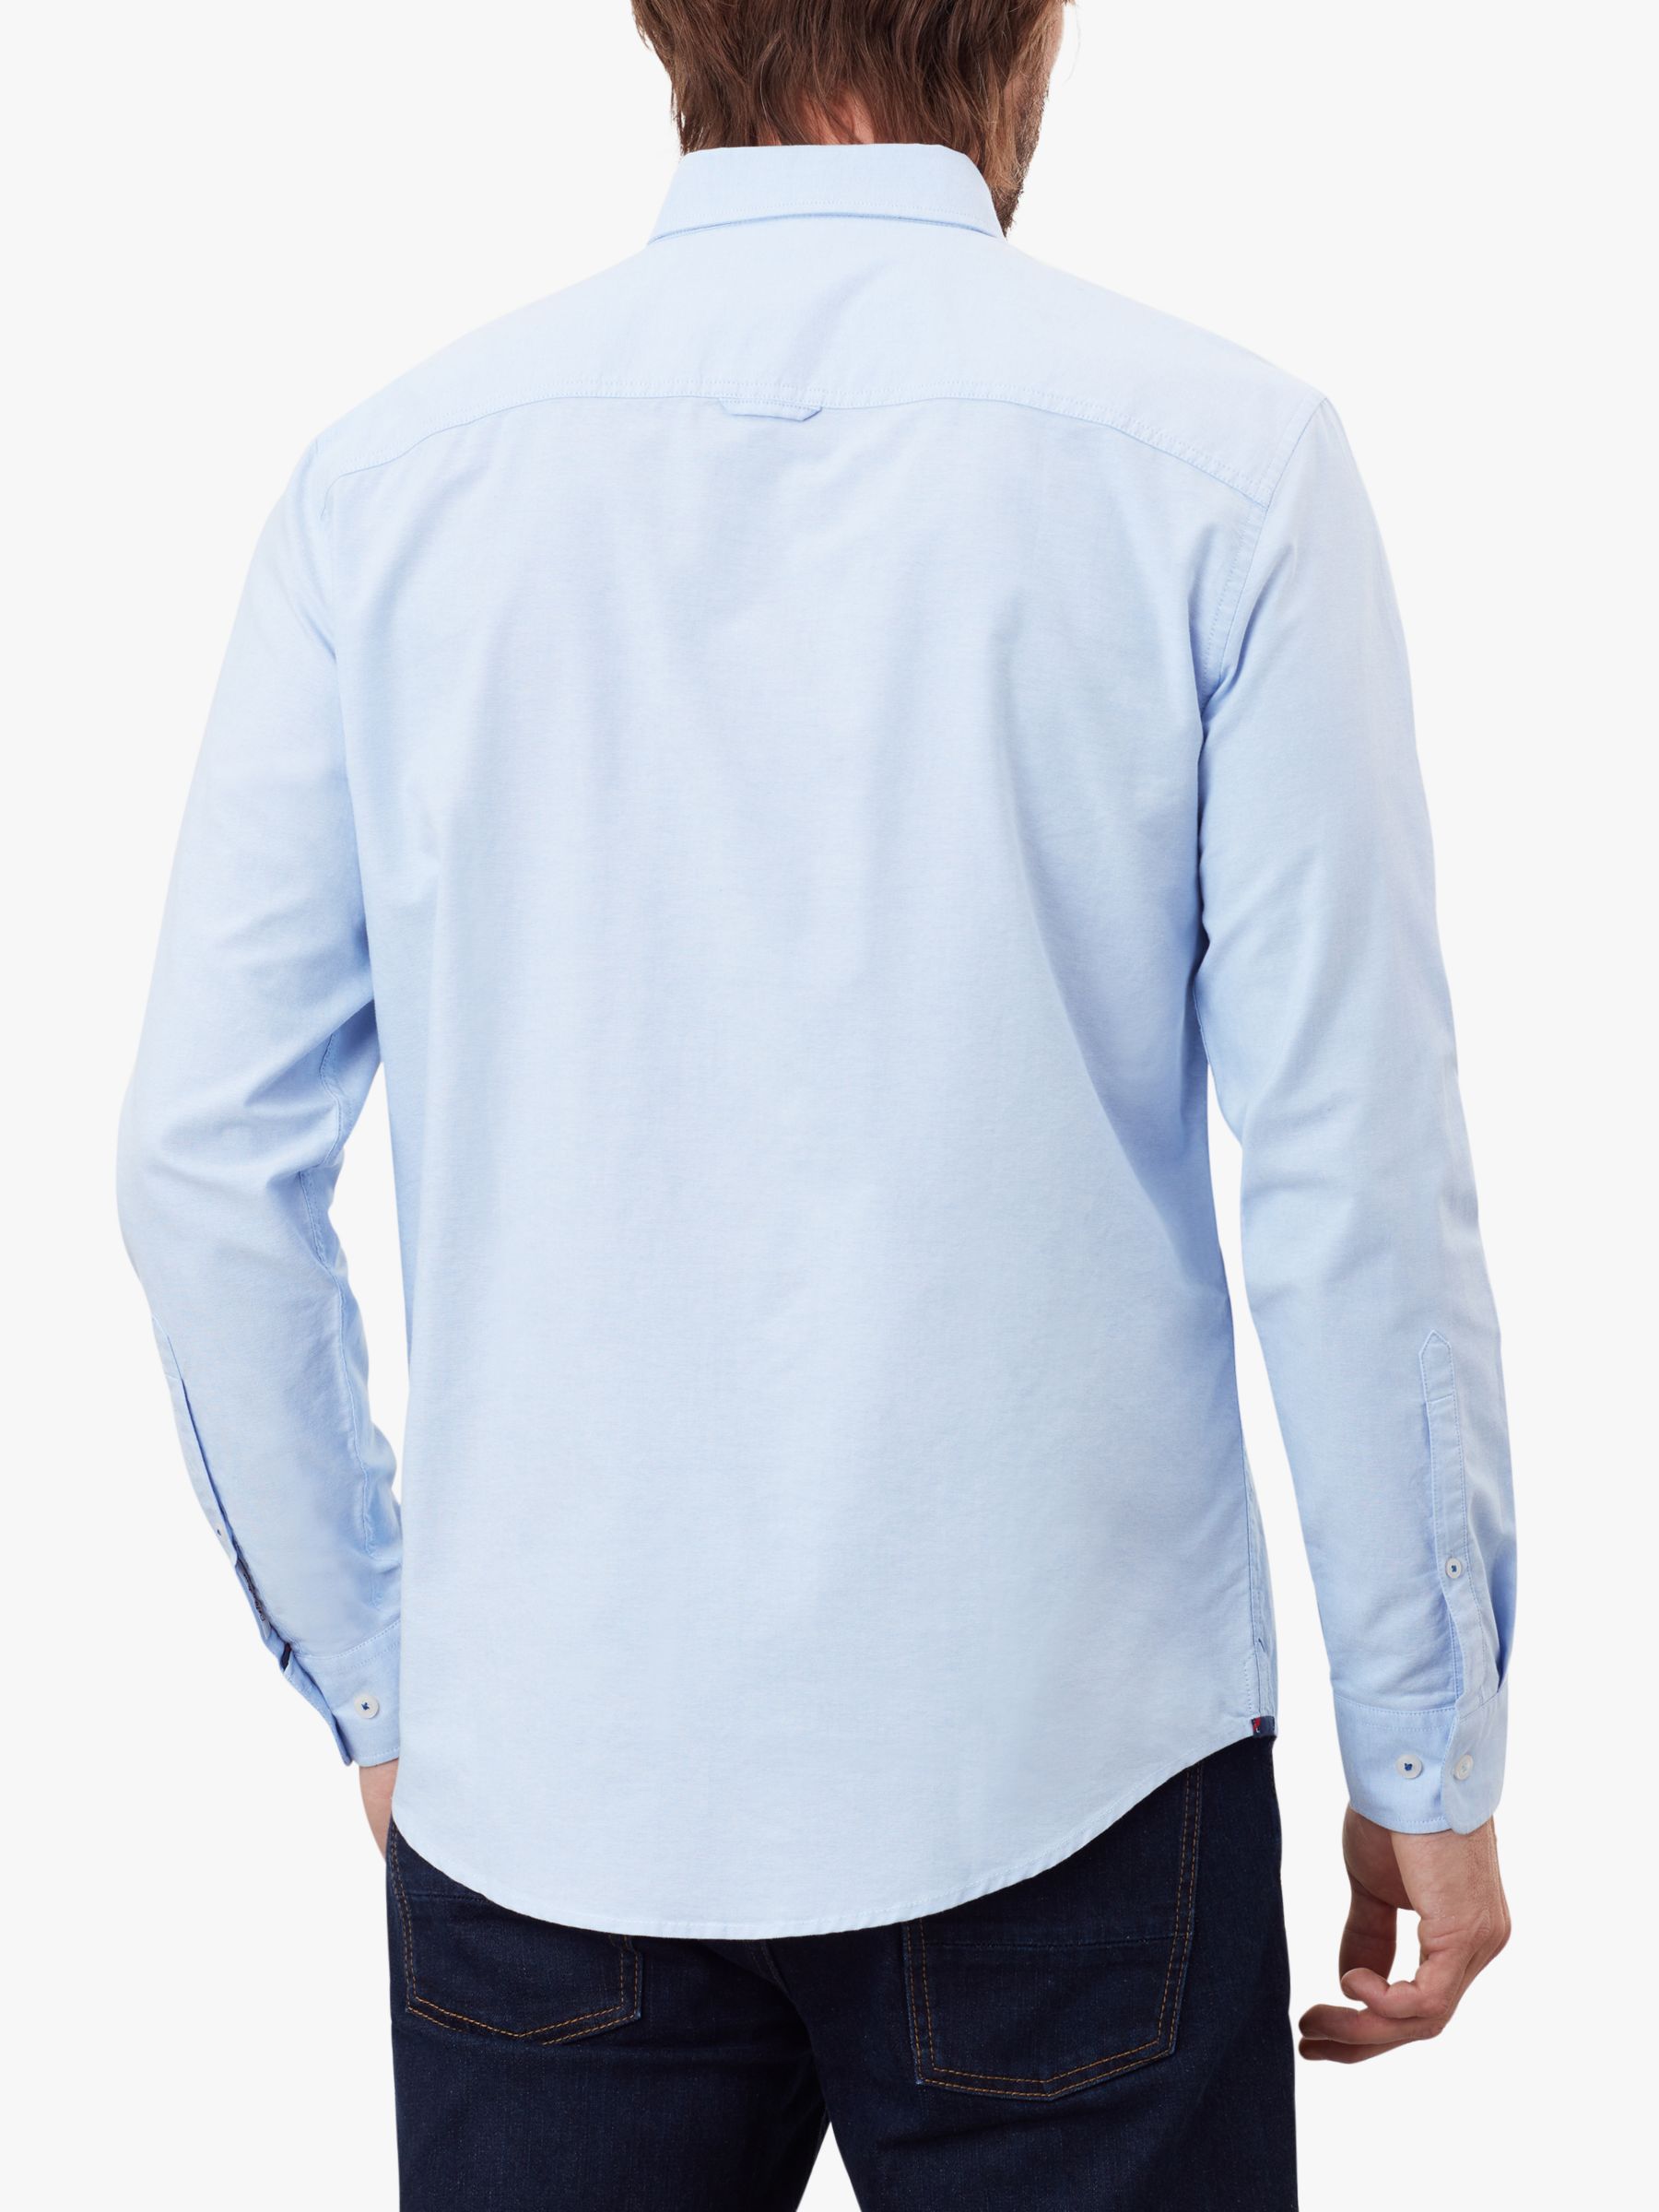 Joules Regular Oxford Shirt, Soft Blue